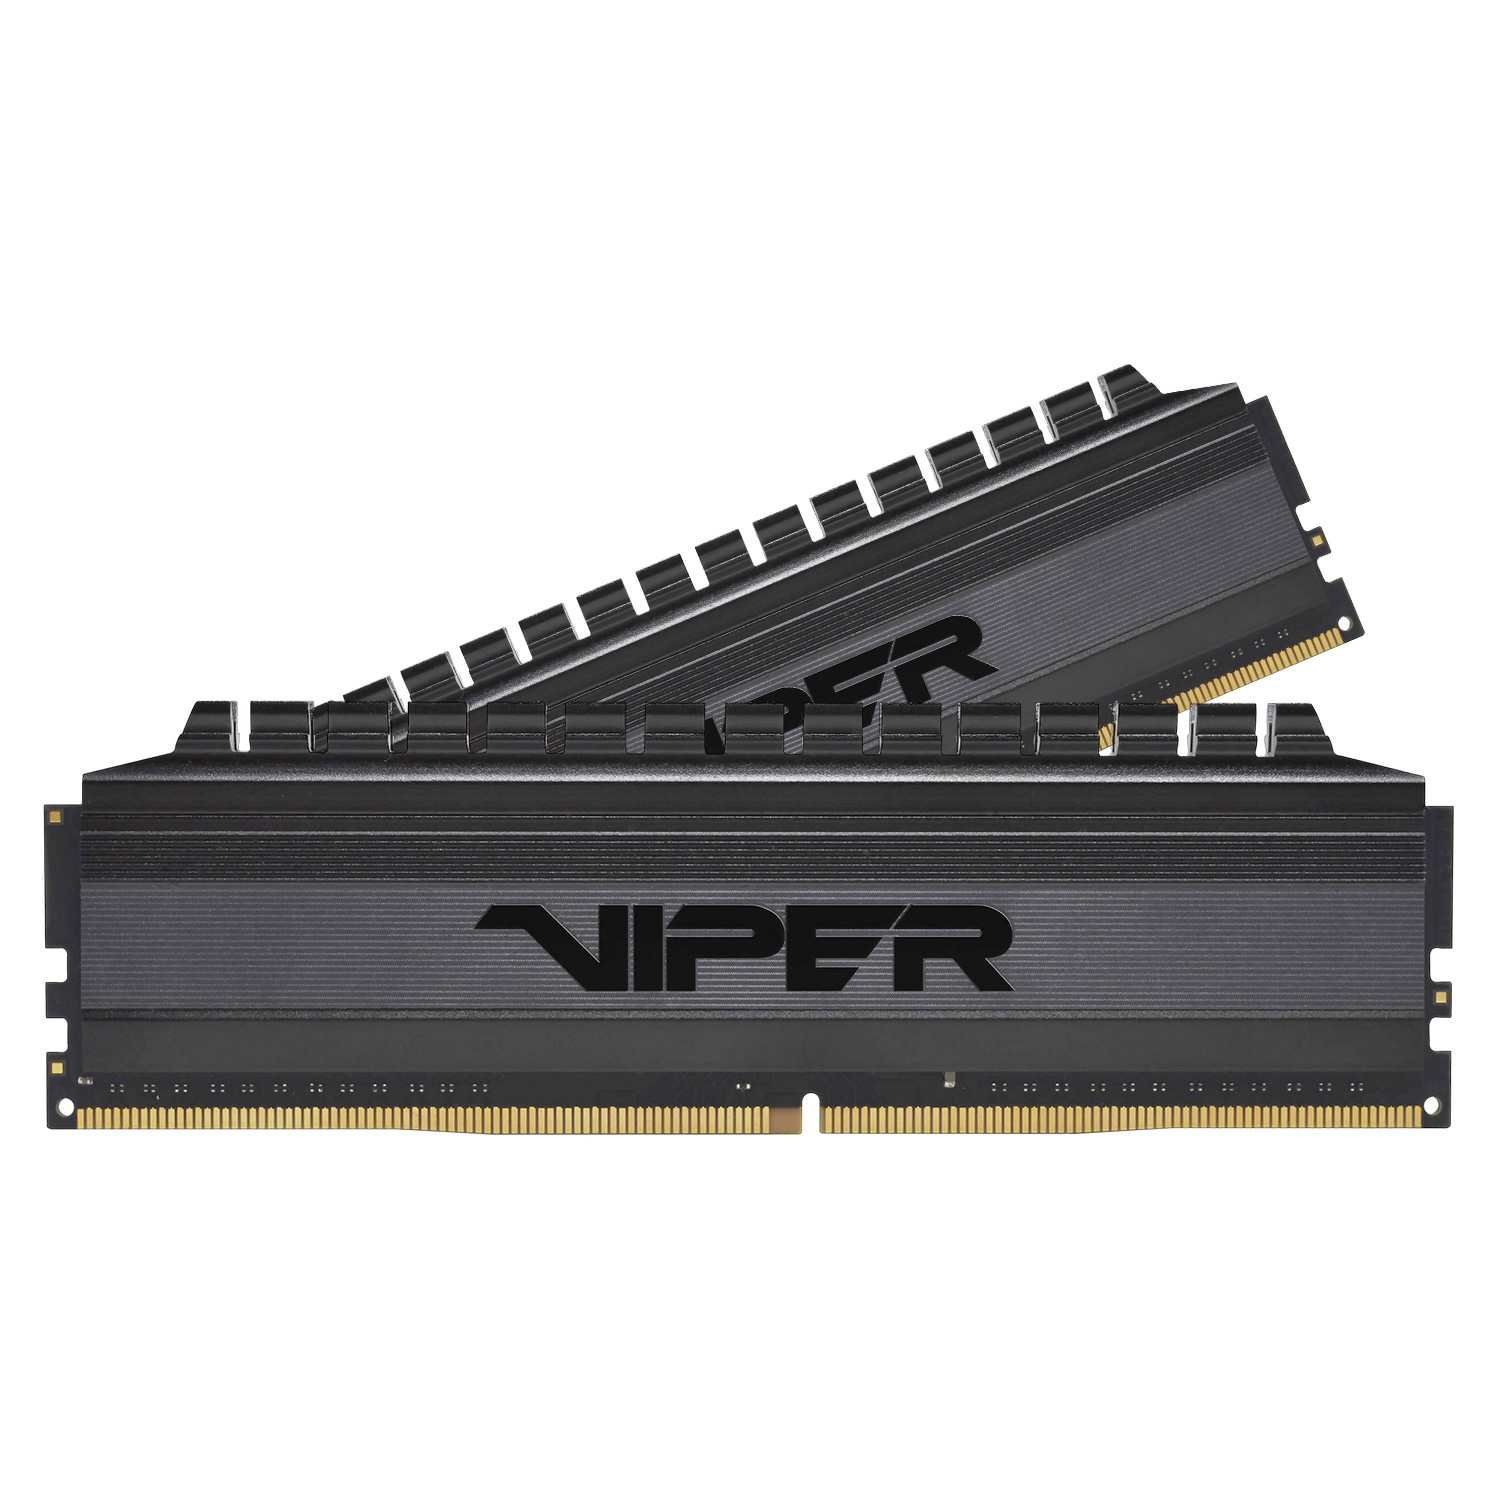 Memória RAM Patriot Viper 4 Blackout / 2x32GB / DDR4 / 3200MHz - (PVB464G320C6K)